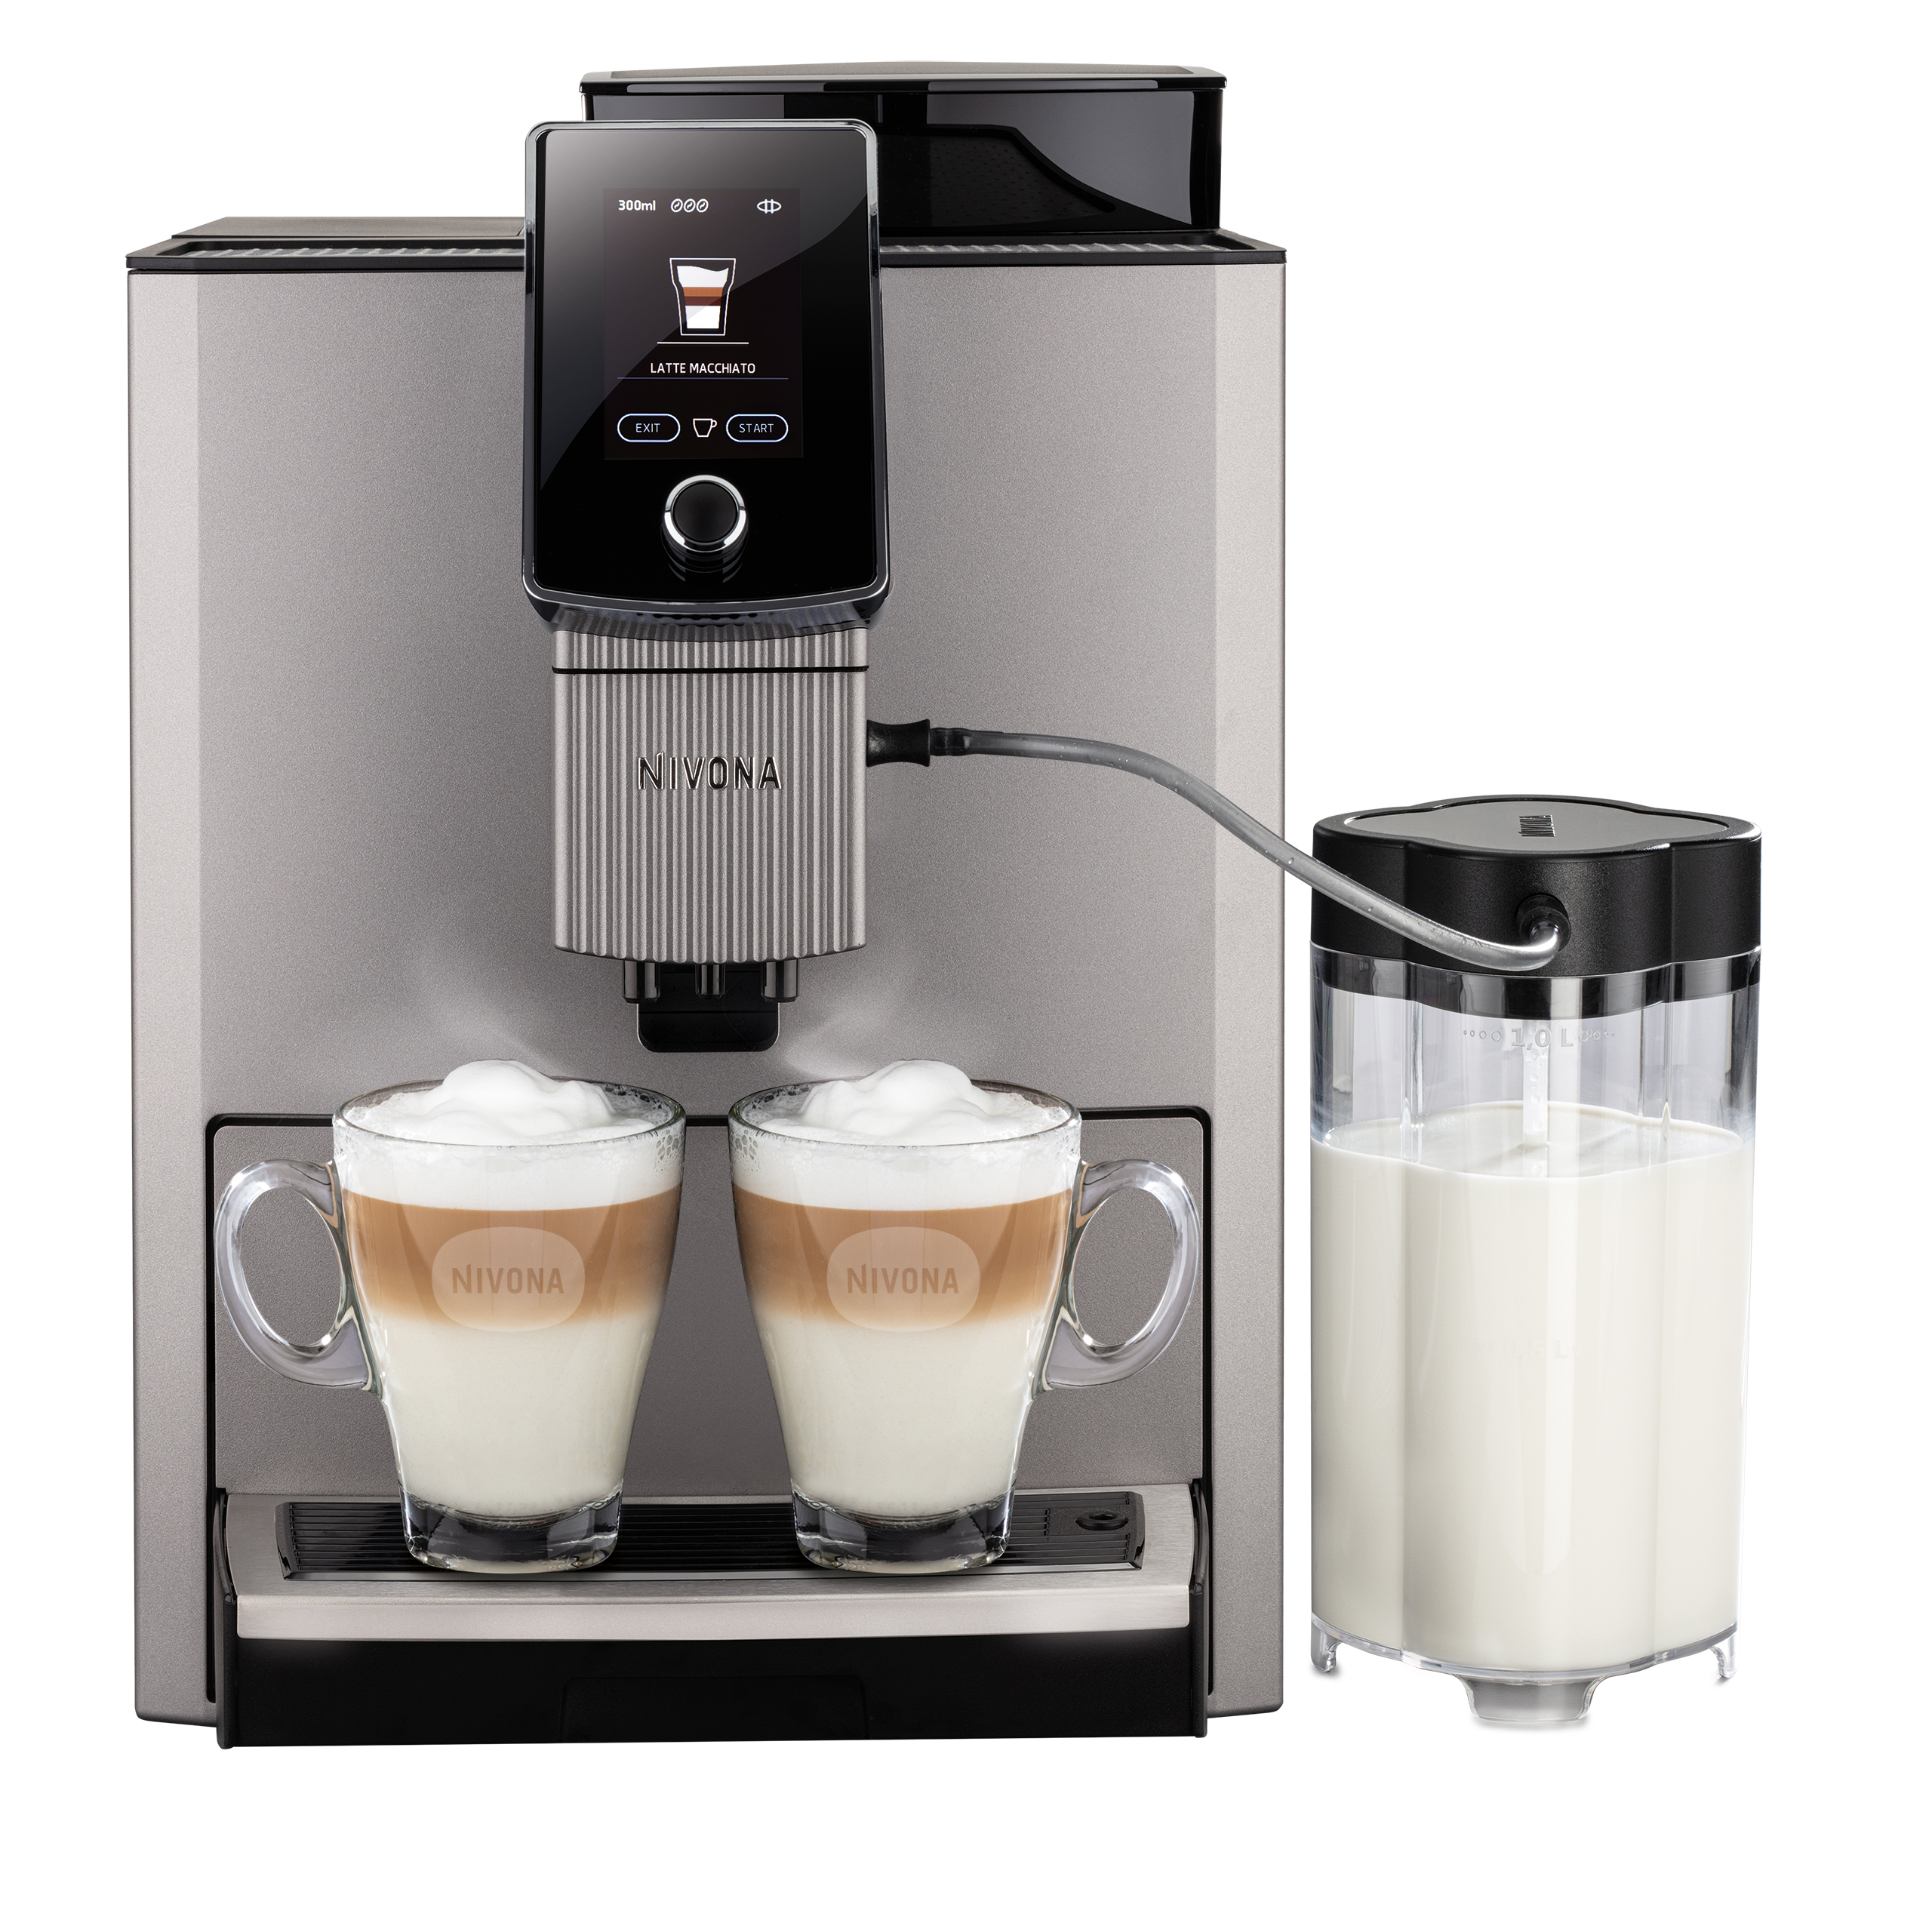 NICR 1040 CafeRomatica fully automatic espresso machine